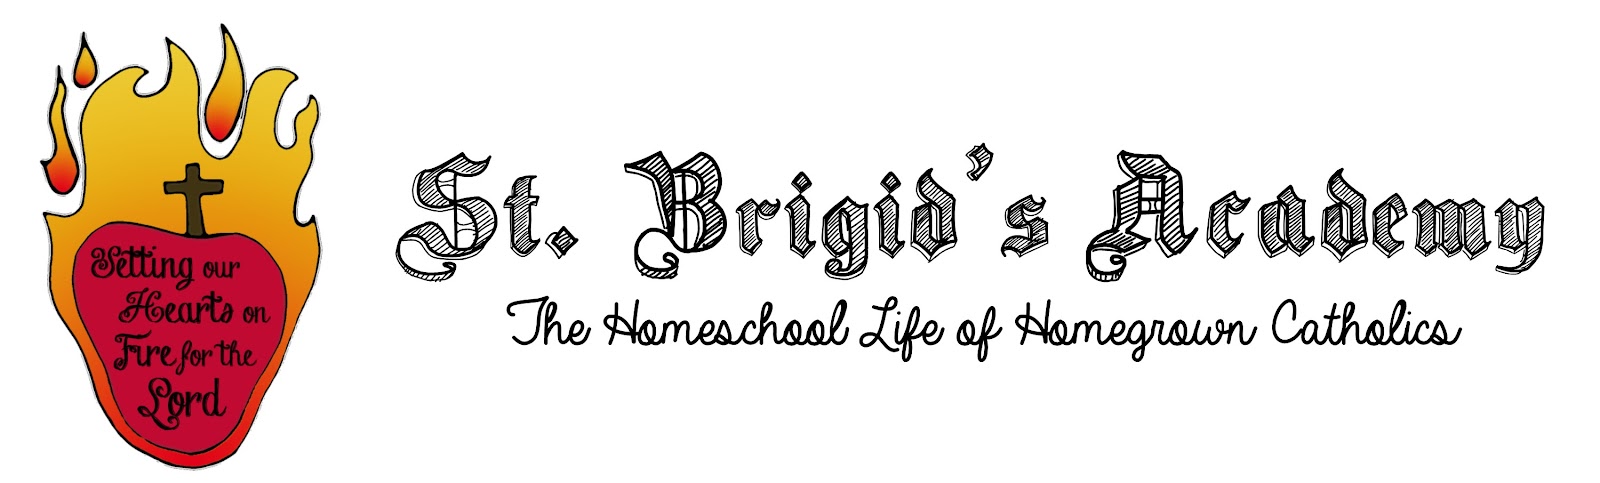 Homegrown Catholics - St Brigids Academy Blog